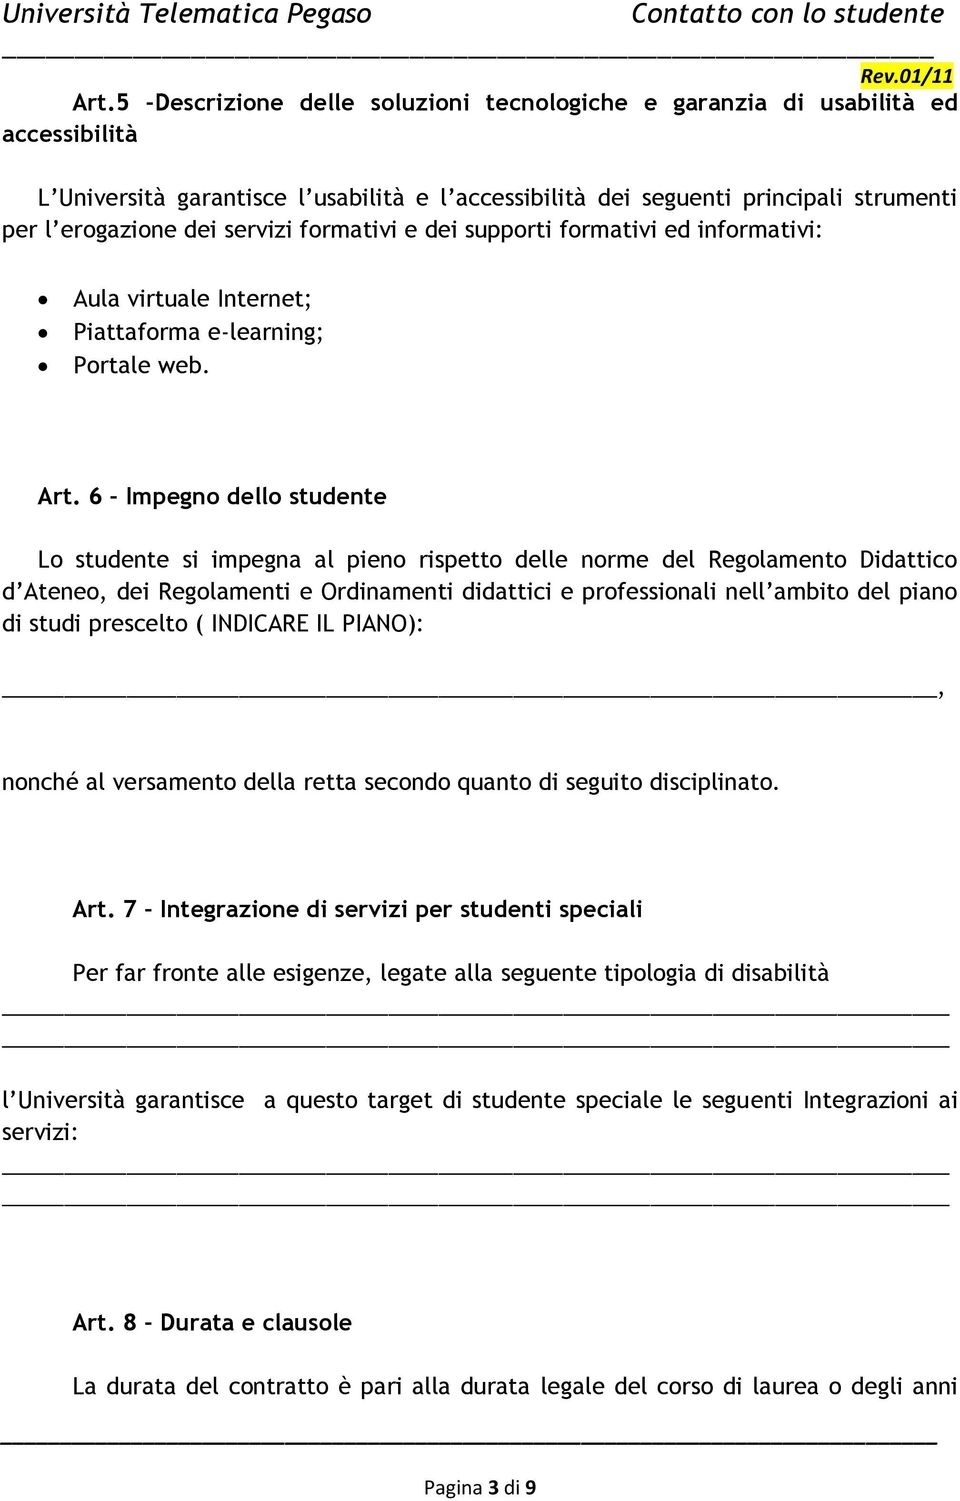 6 Impegno dello studente Lo studente si impegna al pieno rispetto delle norme del Regolamento Didattico d Ateneo, dei Regolamenti e Ordinamenti didattici e professionali nell ambito del piano di